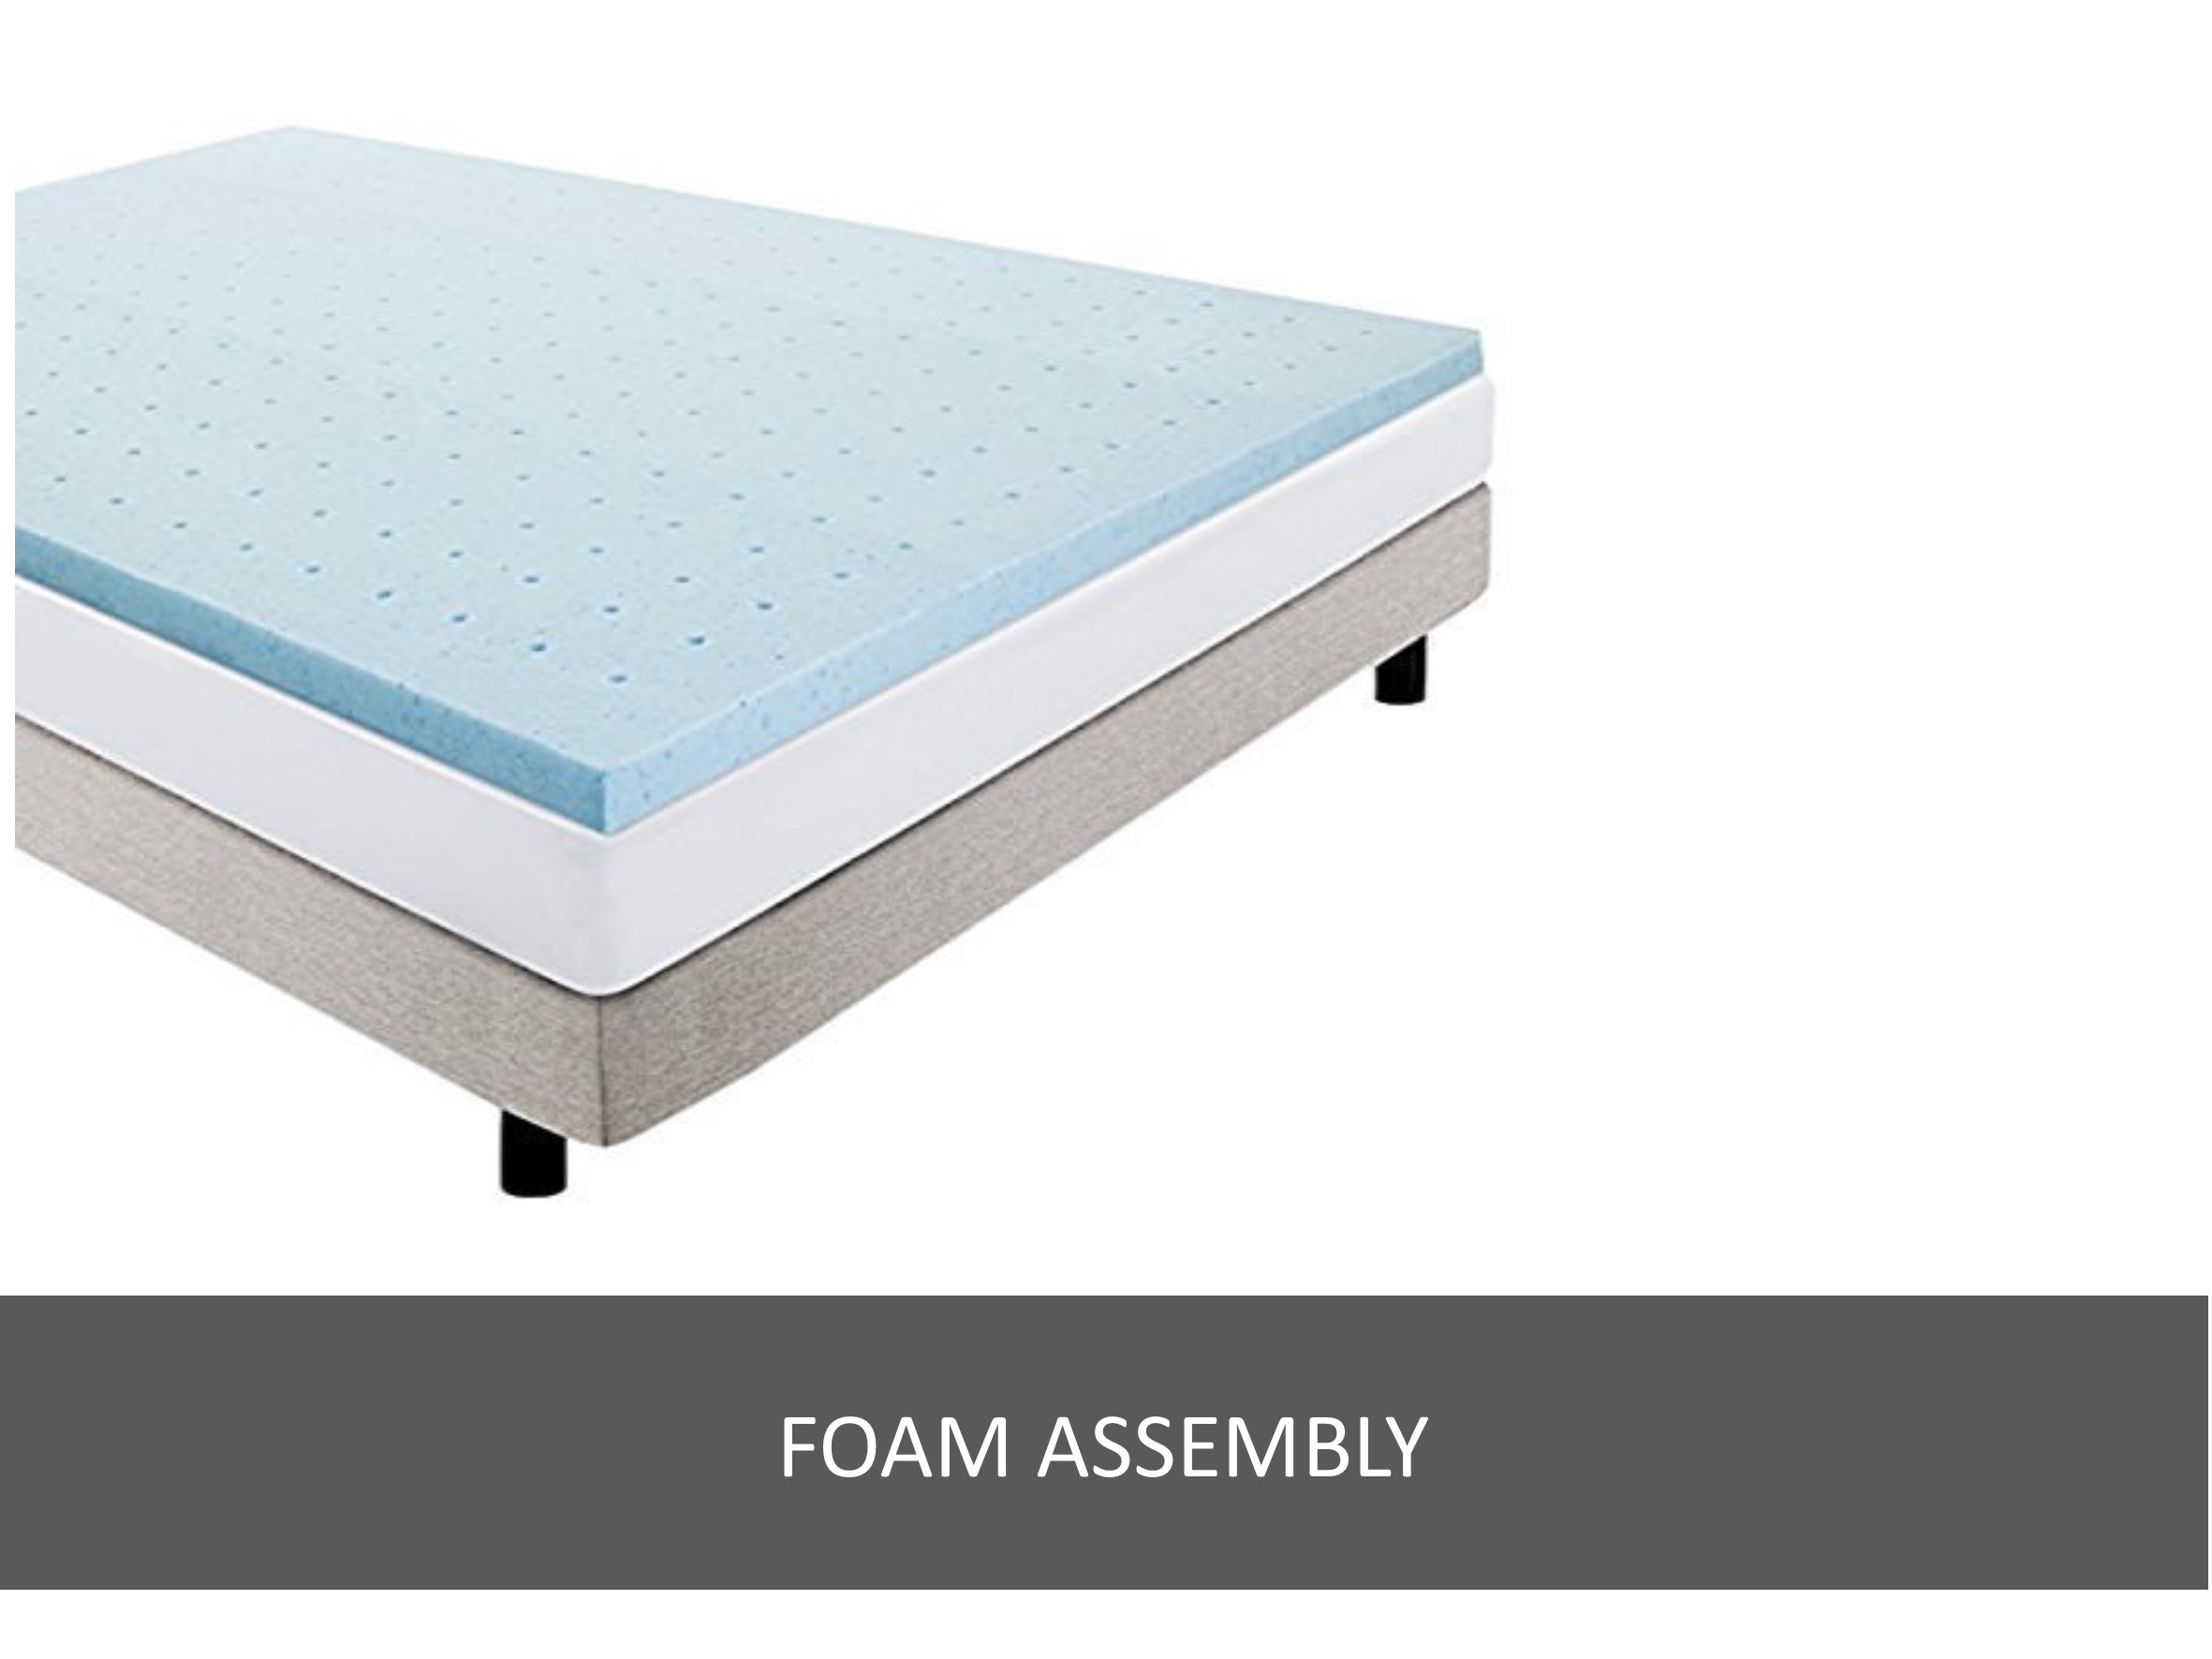 Foam assembly